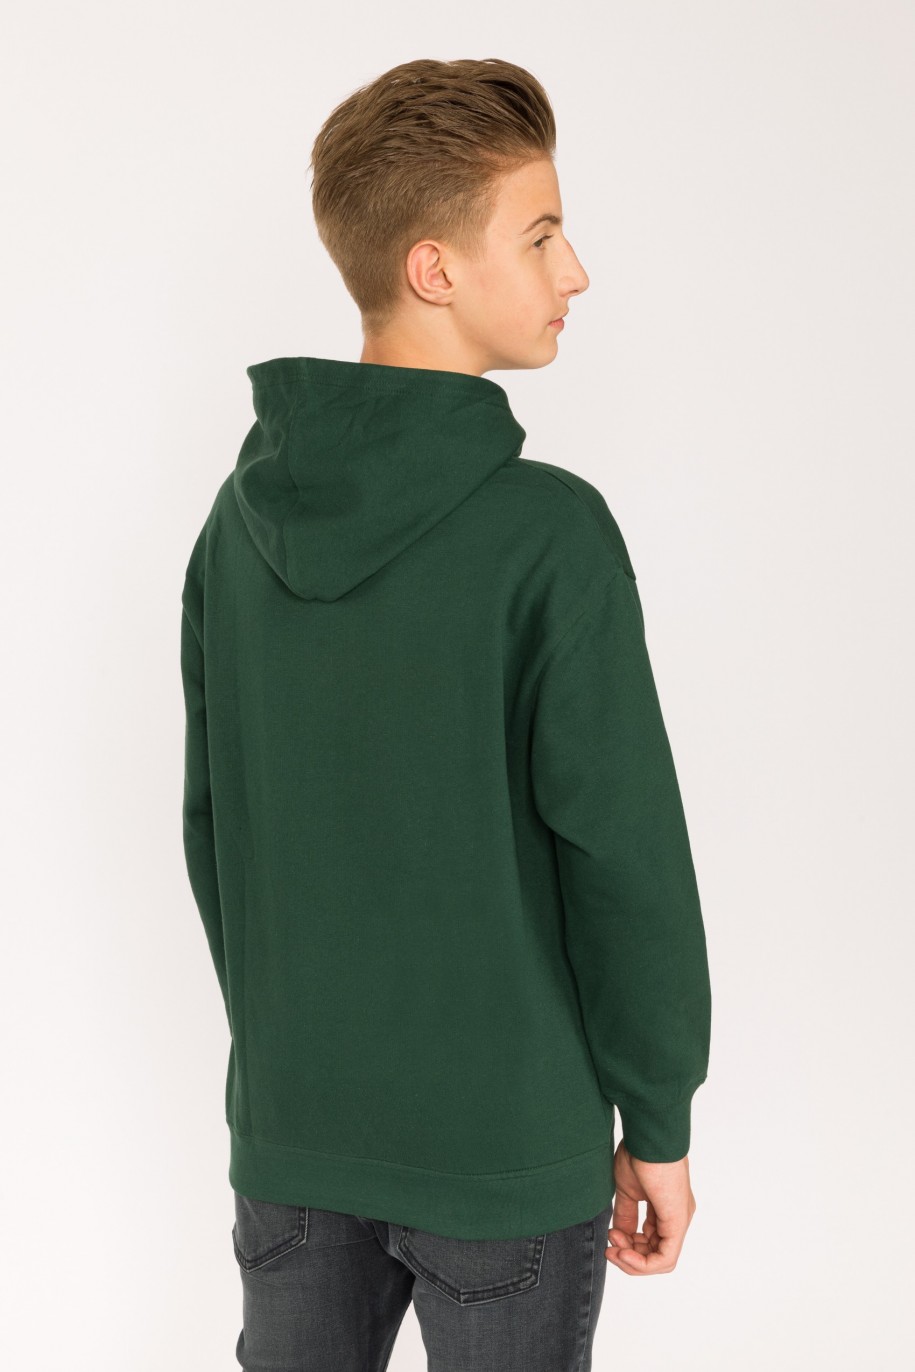 Zielona bluza dla chłopaka z kapturem NONSENS - 29584